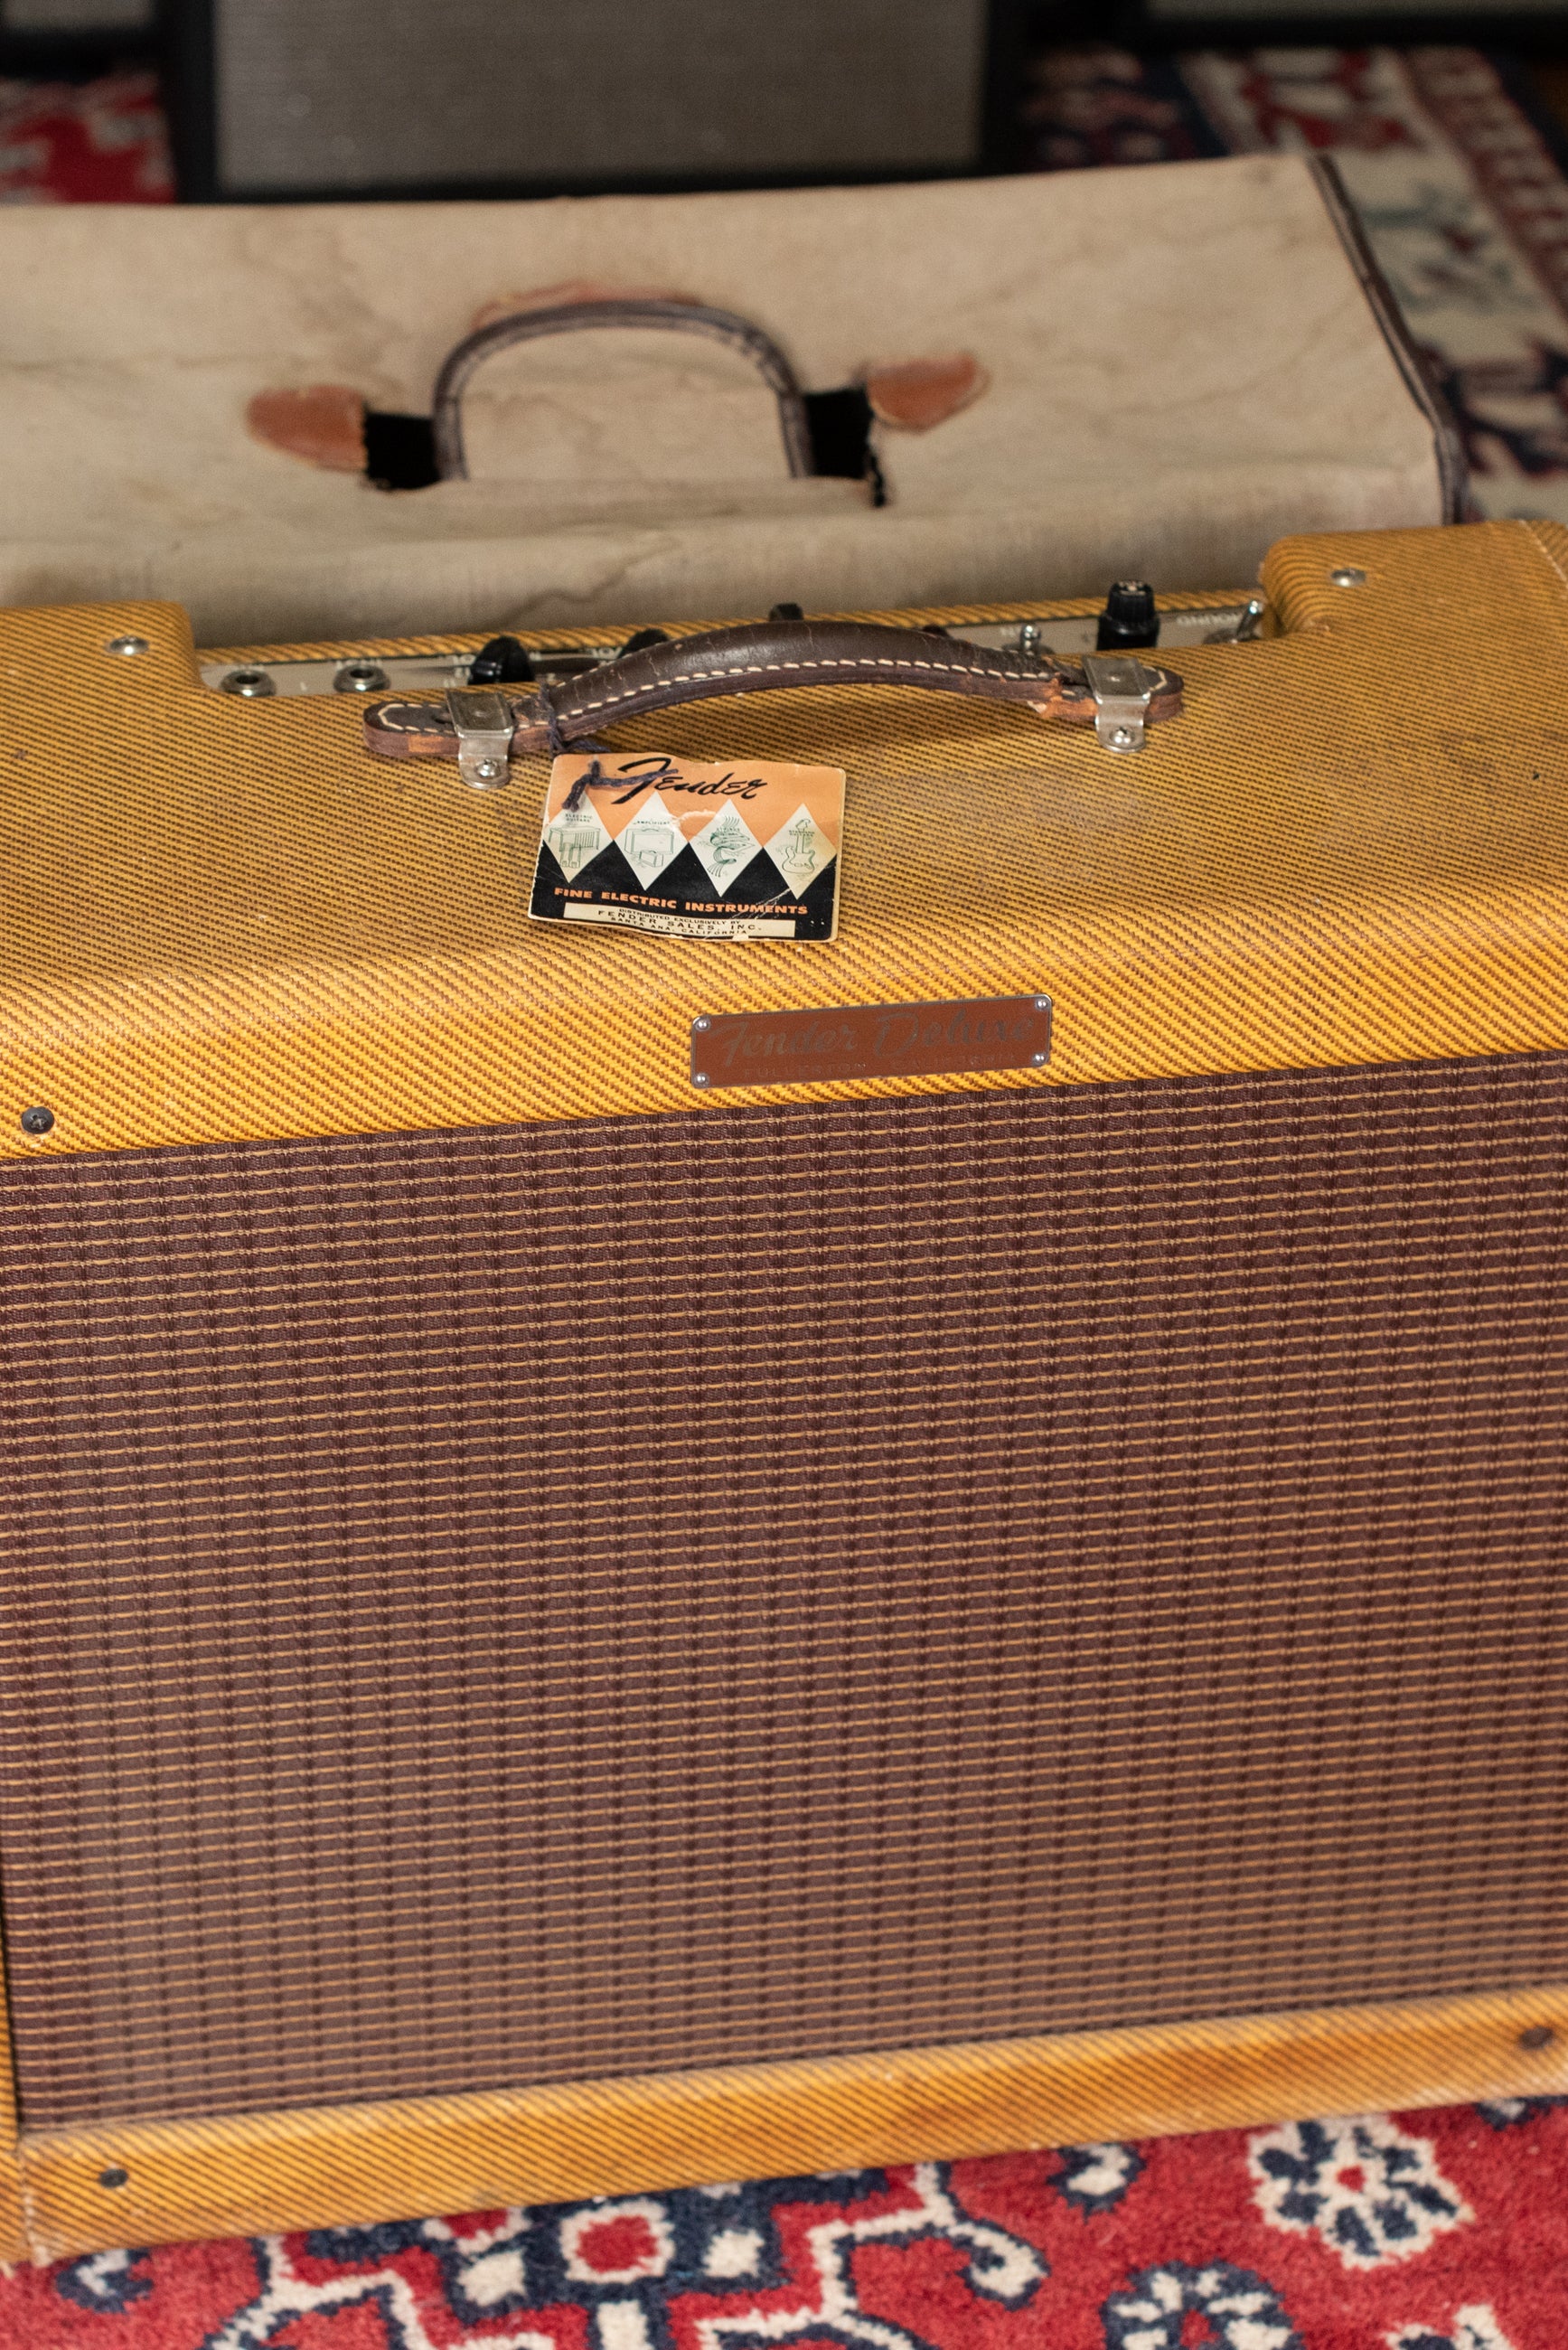 1958 Fender Deluxe Tweed guitar amp